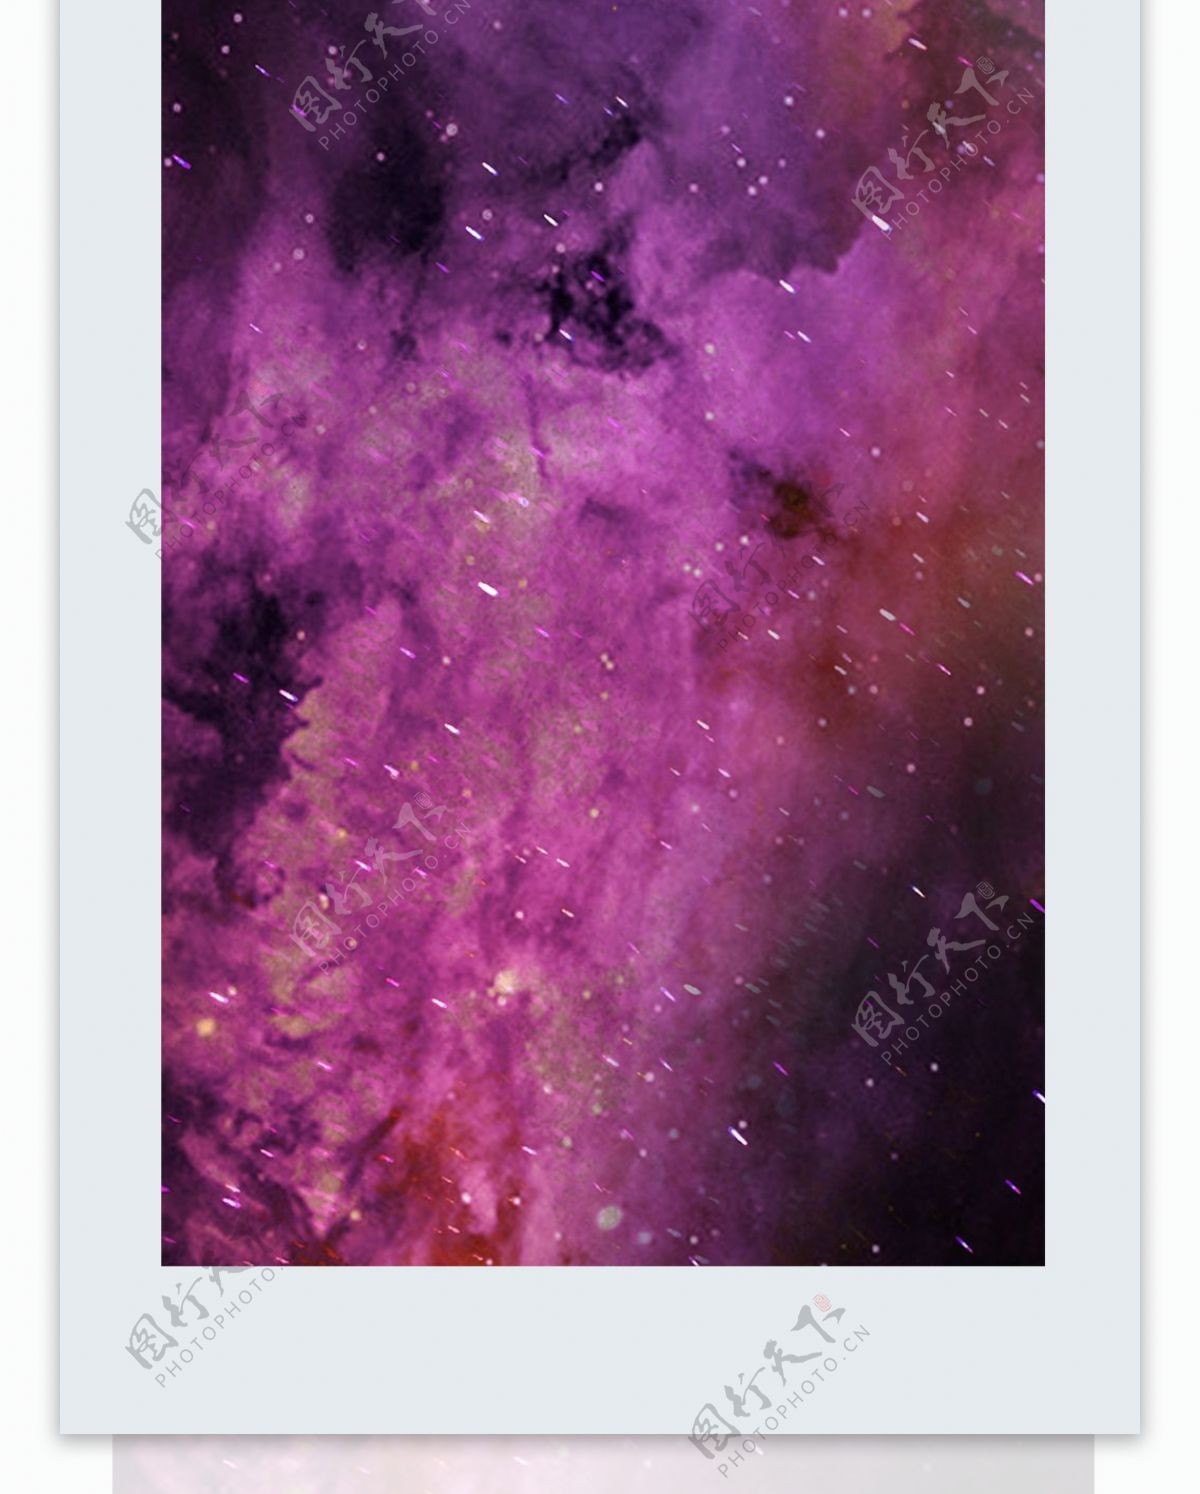 原创暗色系枯竭的星空大地紫色幽冥手机壳